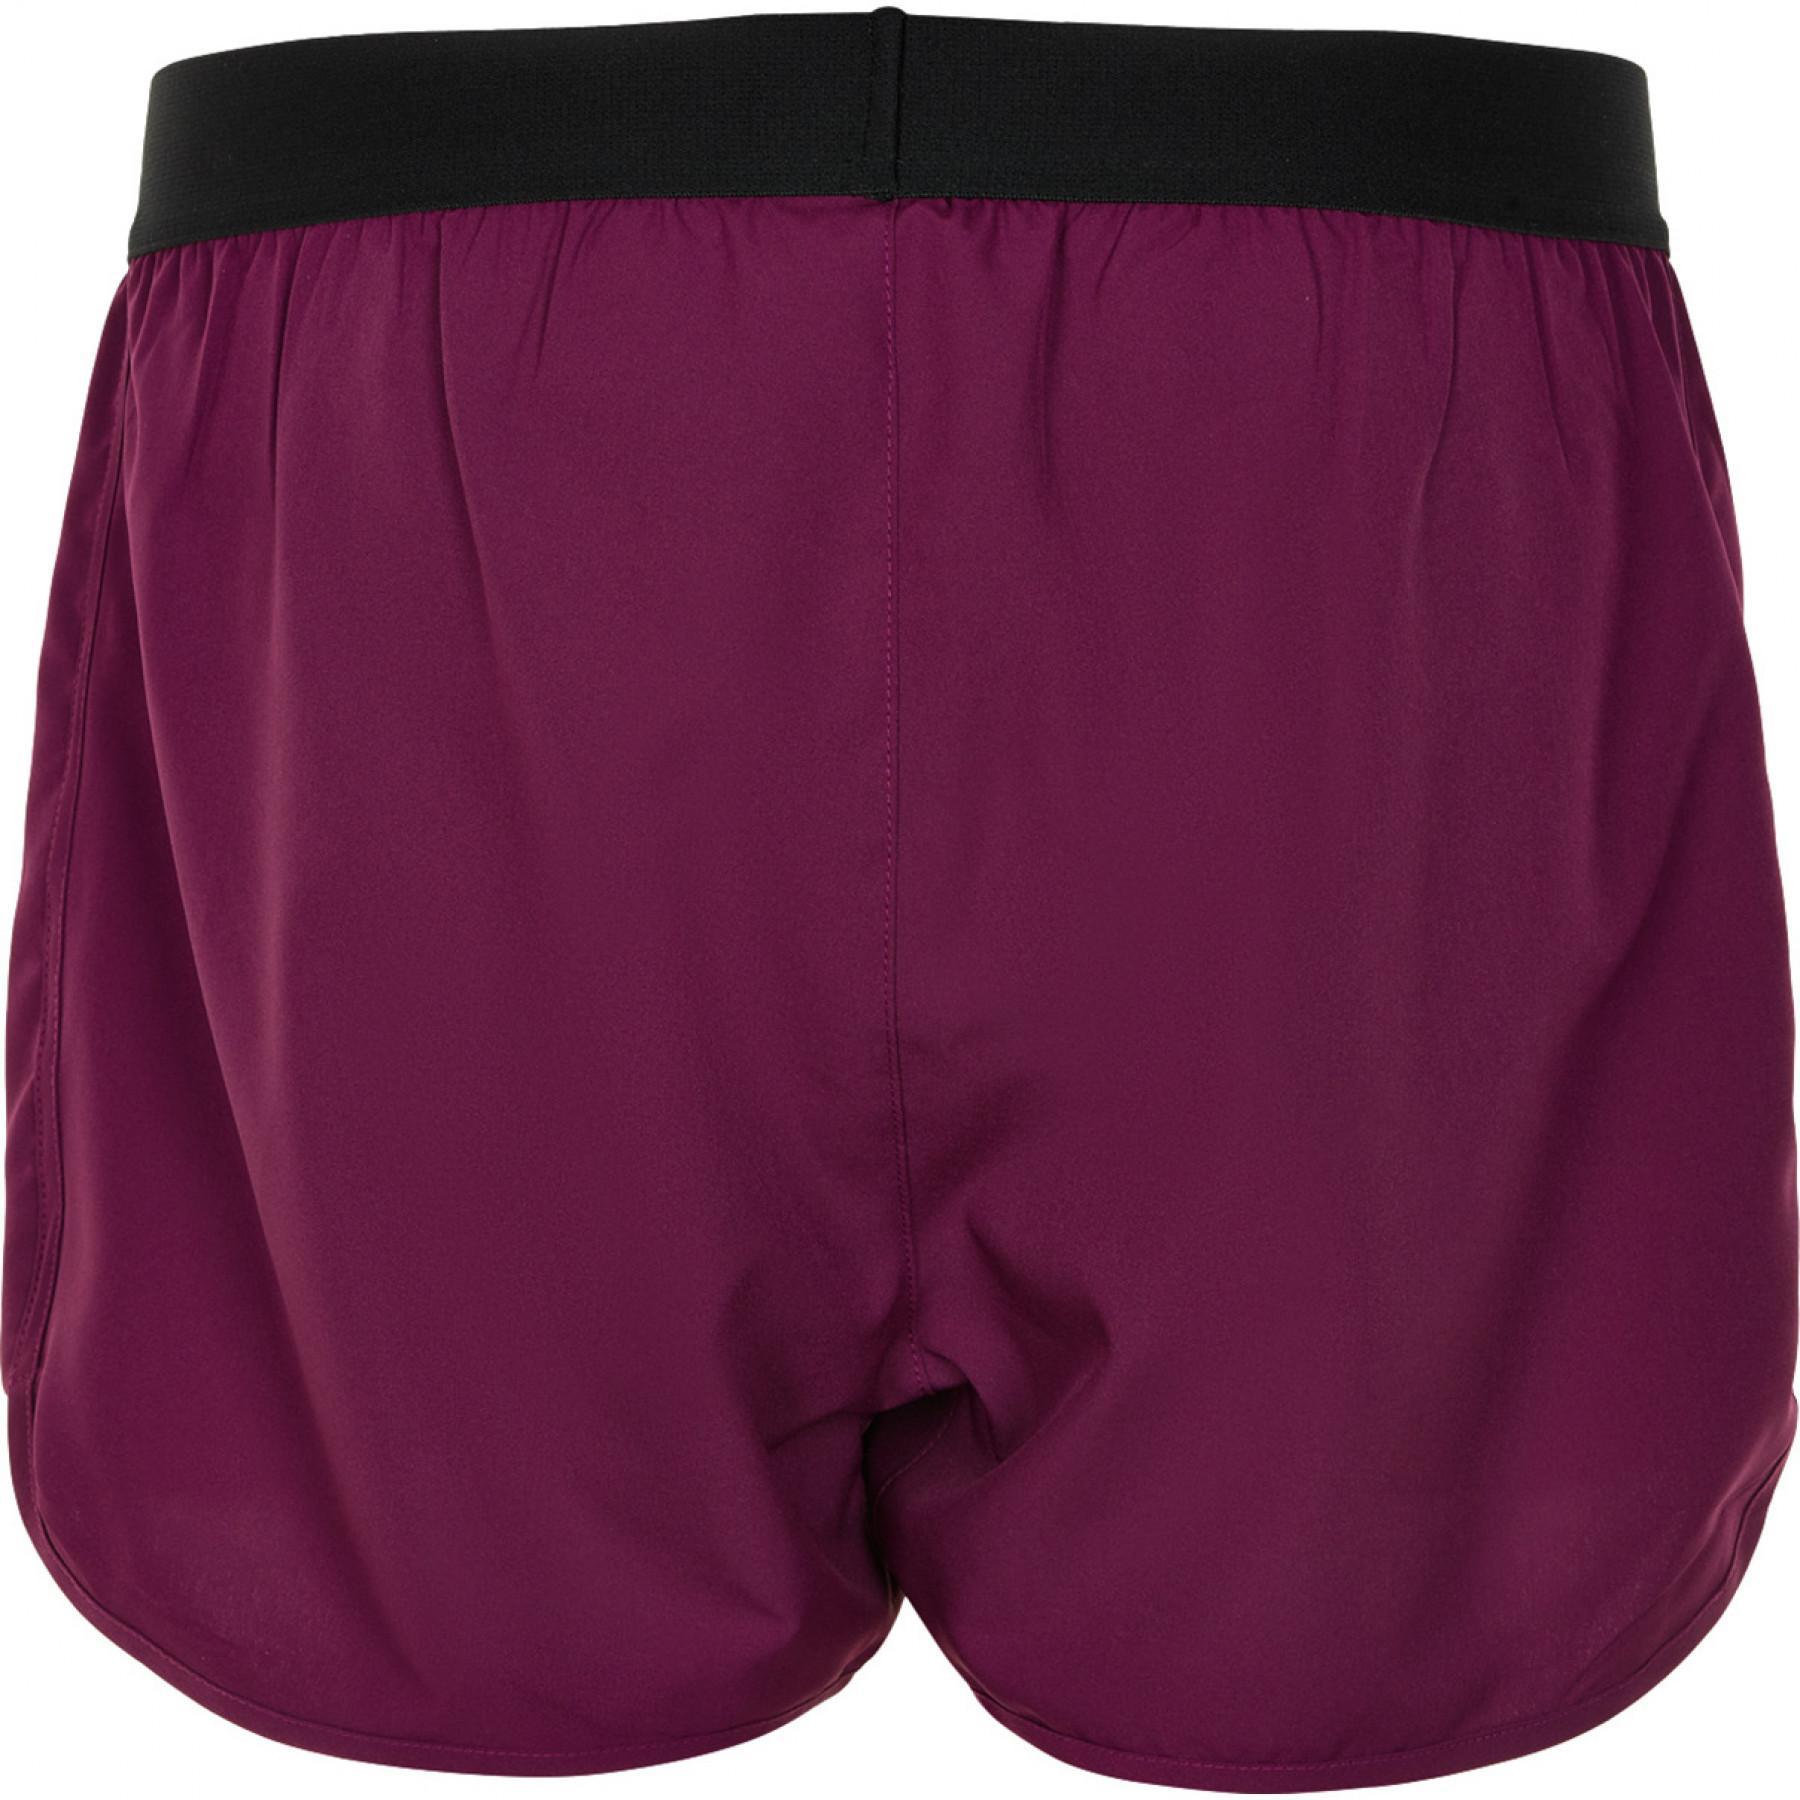 Shorts für Damen Newline 2-lay